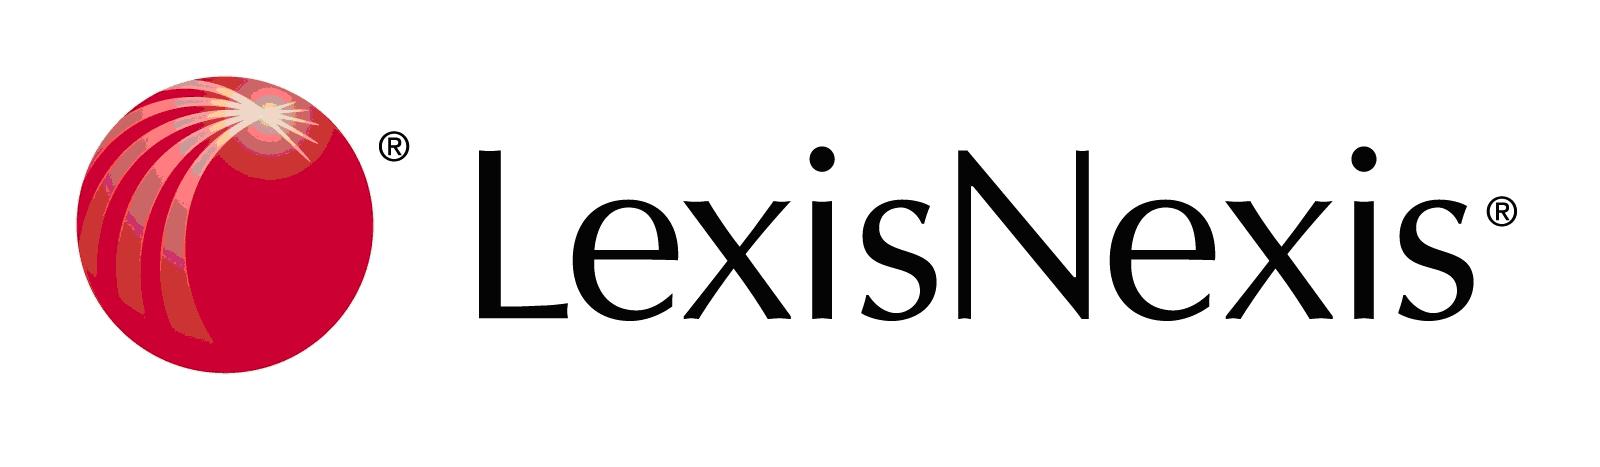 LexisNexis Logo - LexisNexis Halloween Quiz |